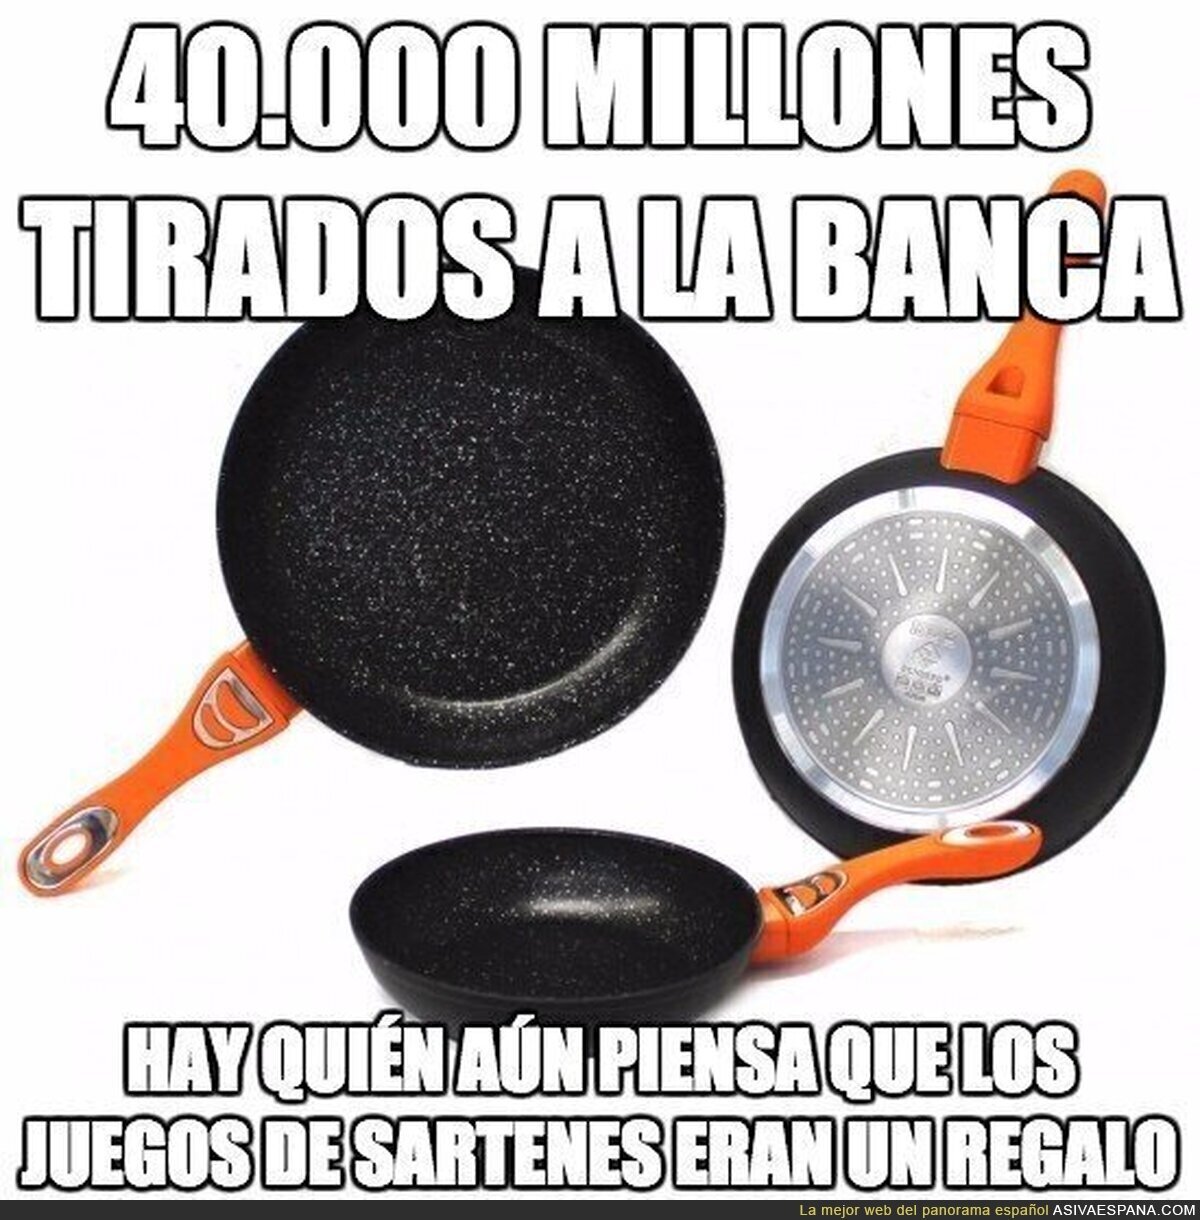 40.000 MILLONES TIRADOS A LA BANCA